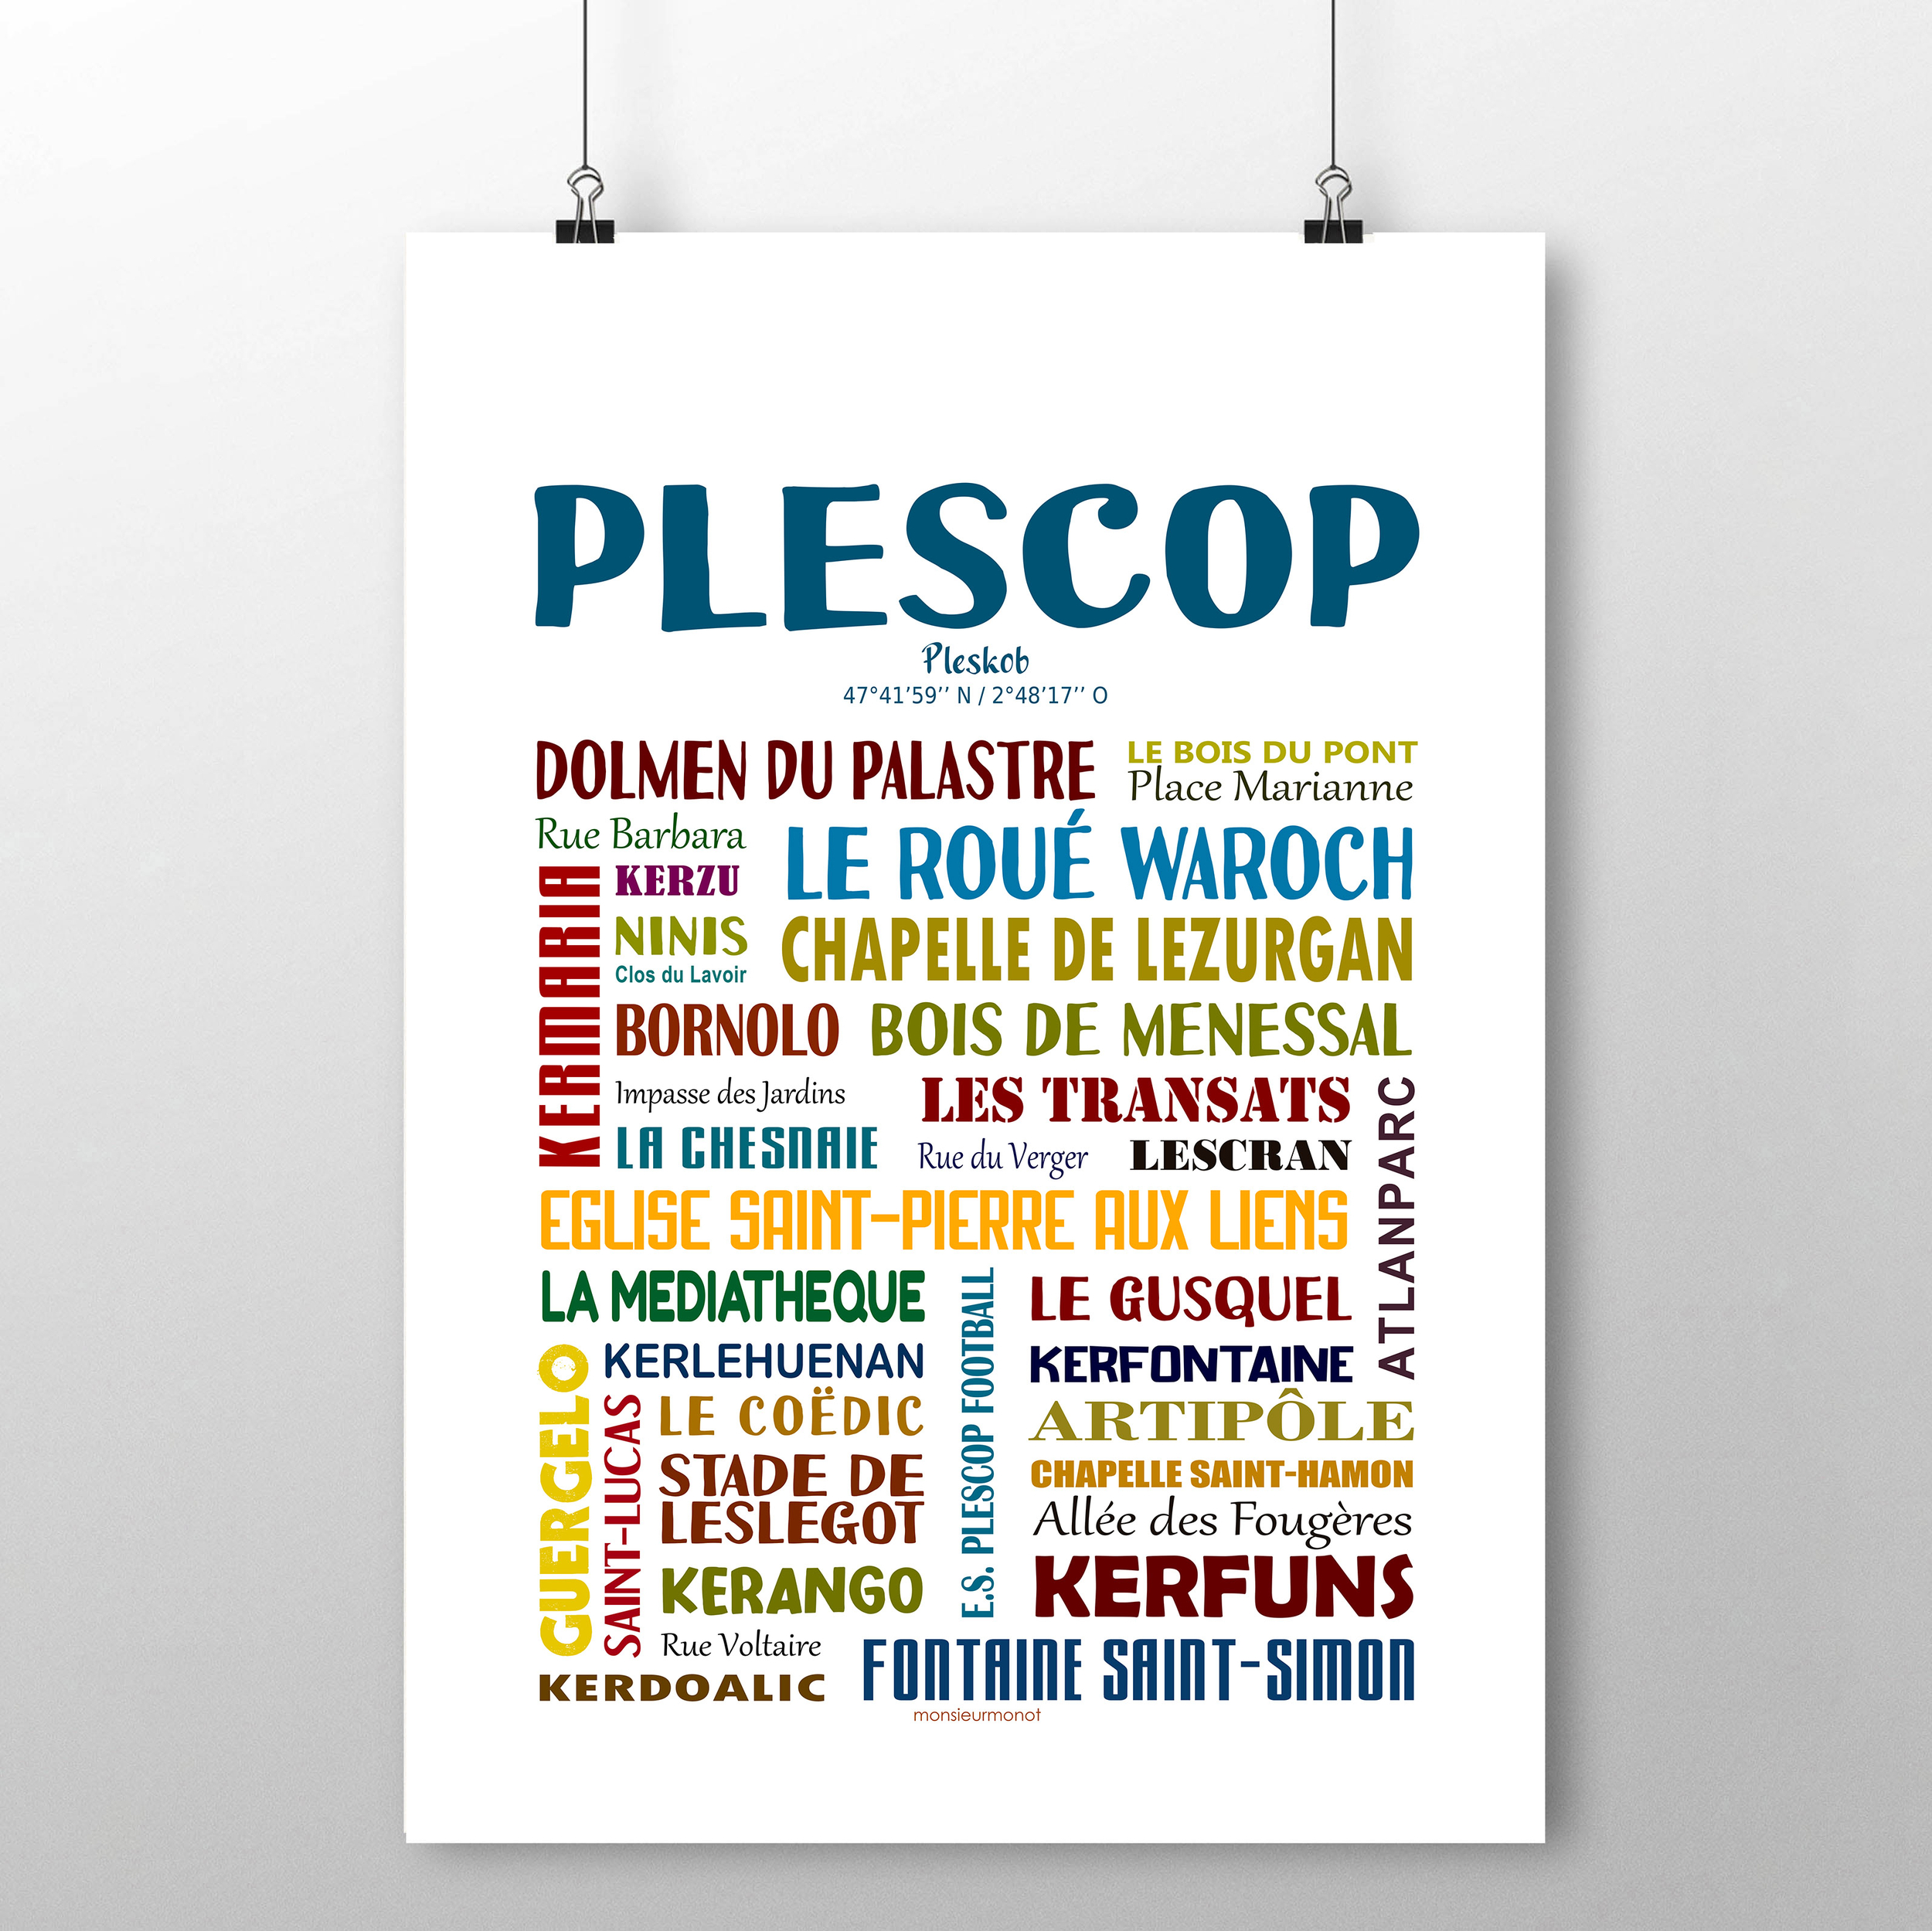 Plescop